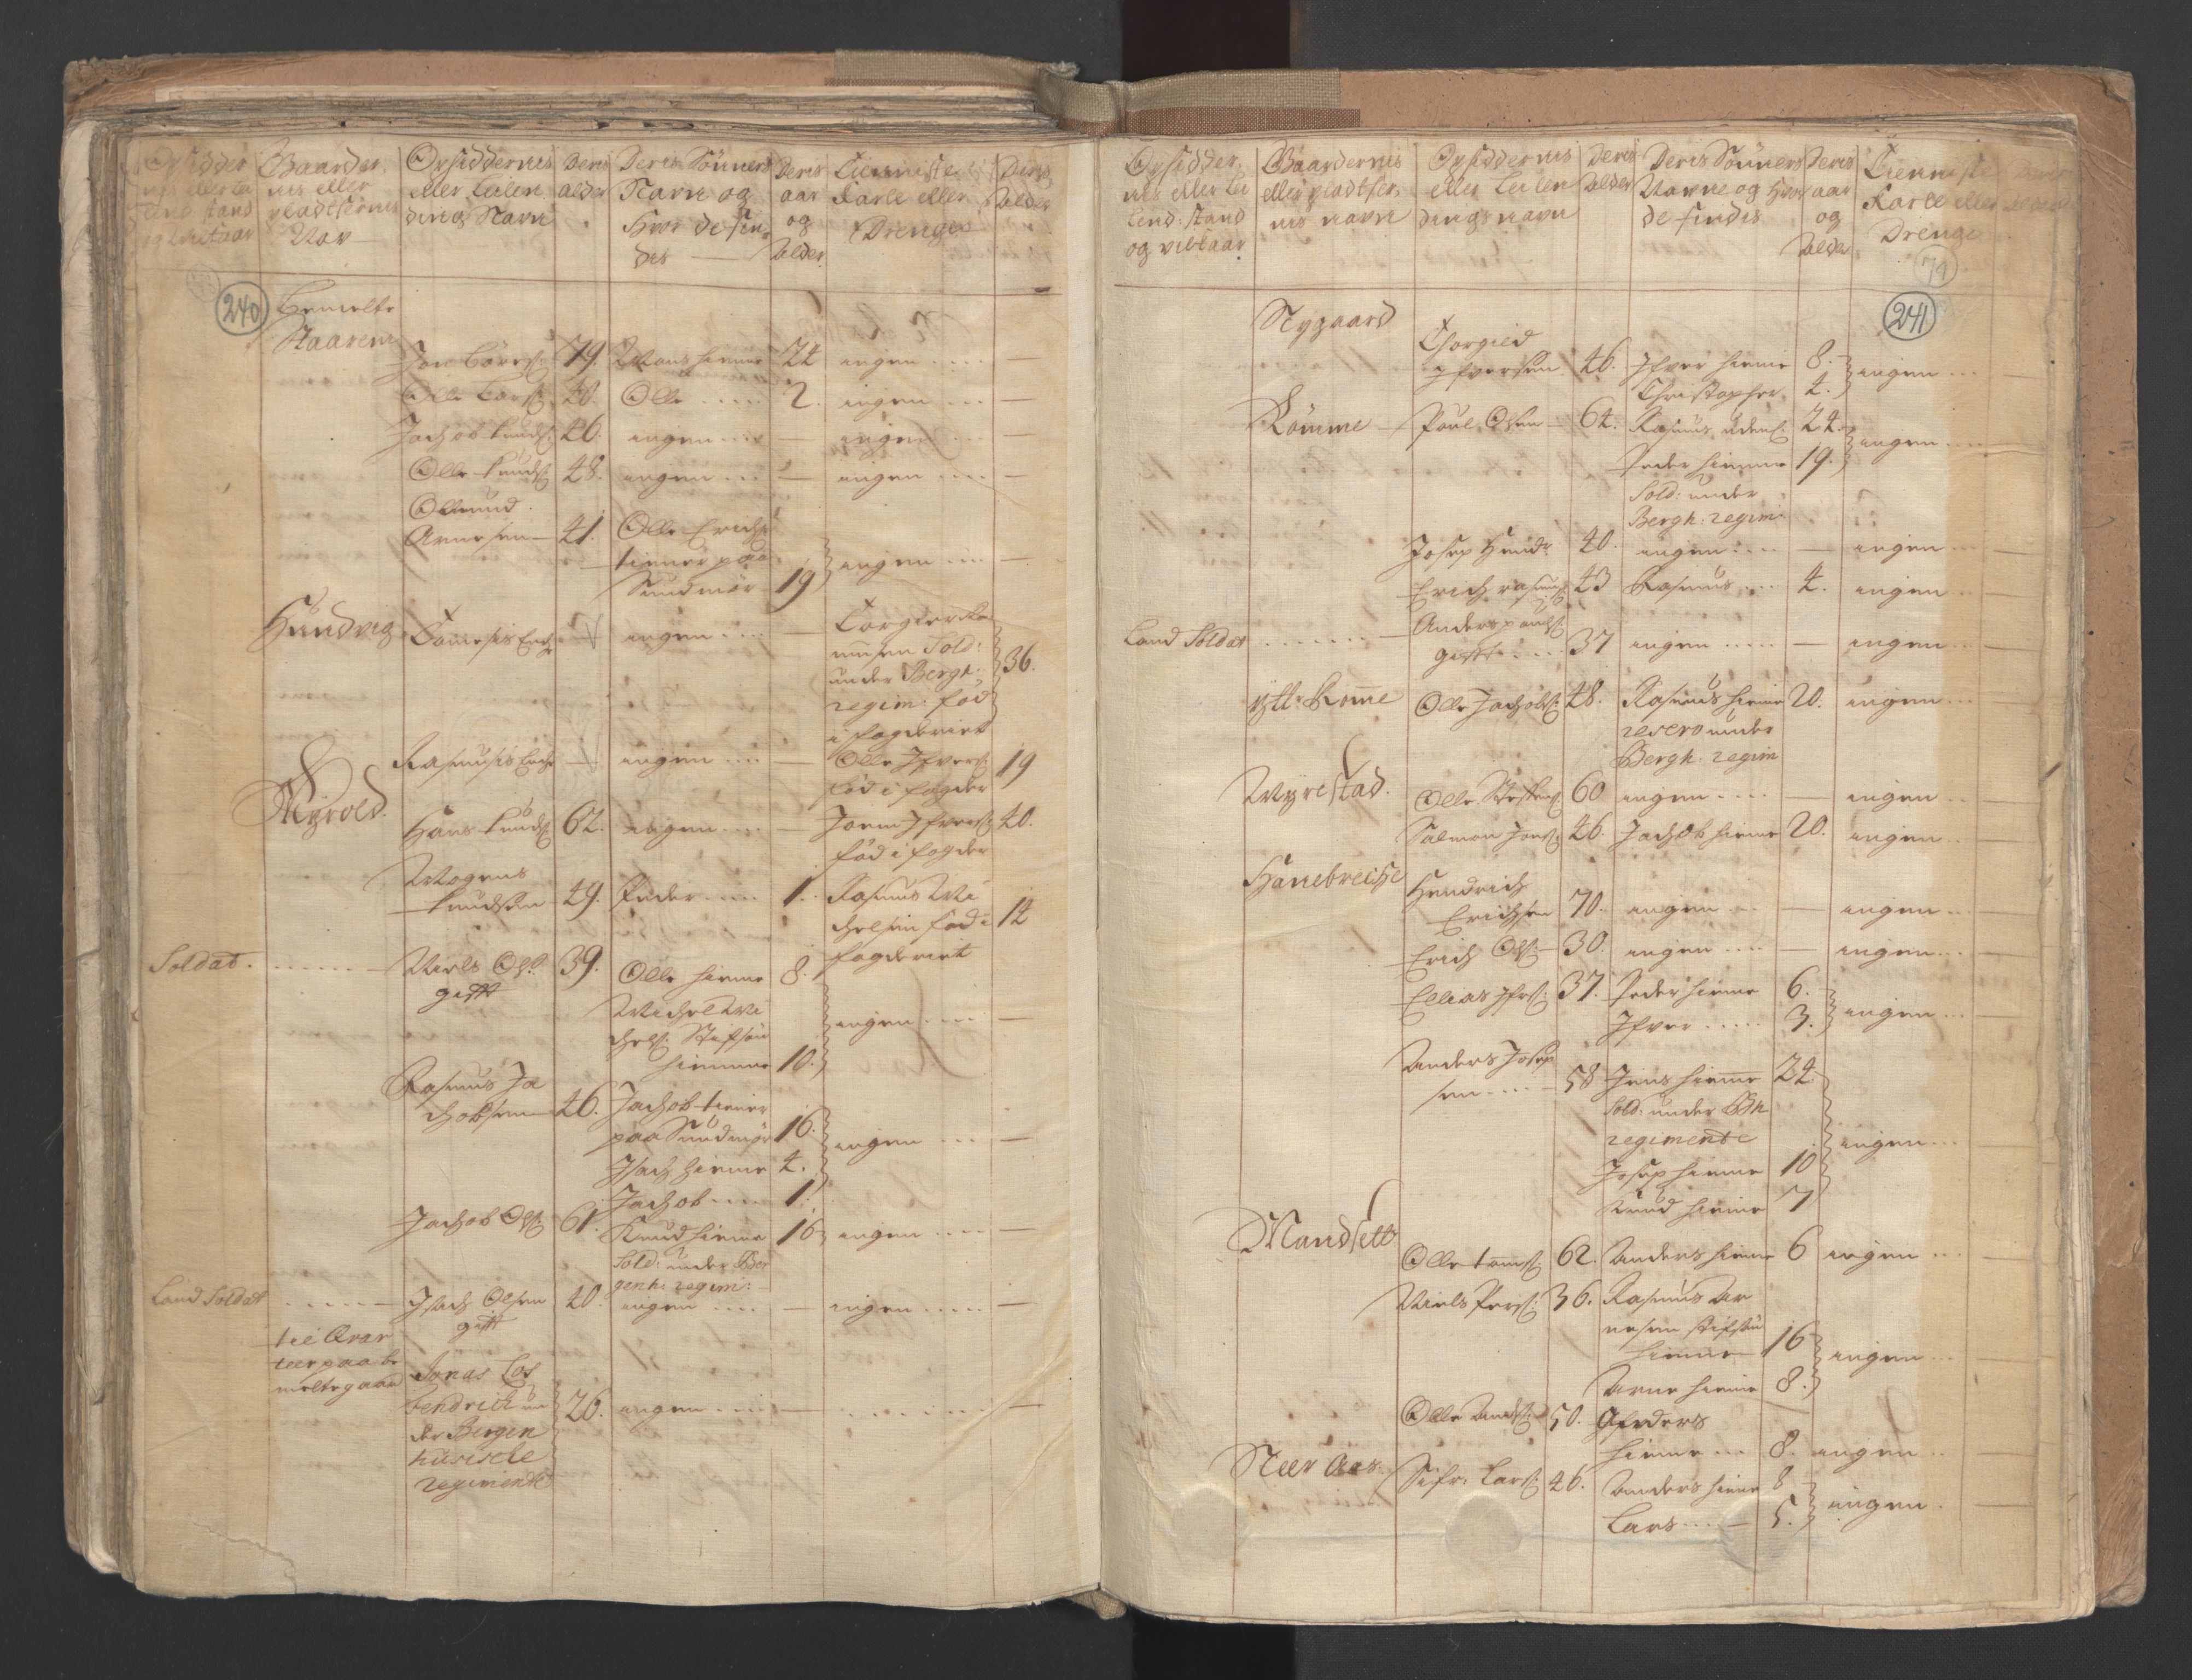 RA, Census (manntall) 1701, no. 9: Sunnfjord fogderi, Nordfjord fogderi and Svanø birk, 1701, p. 240-241